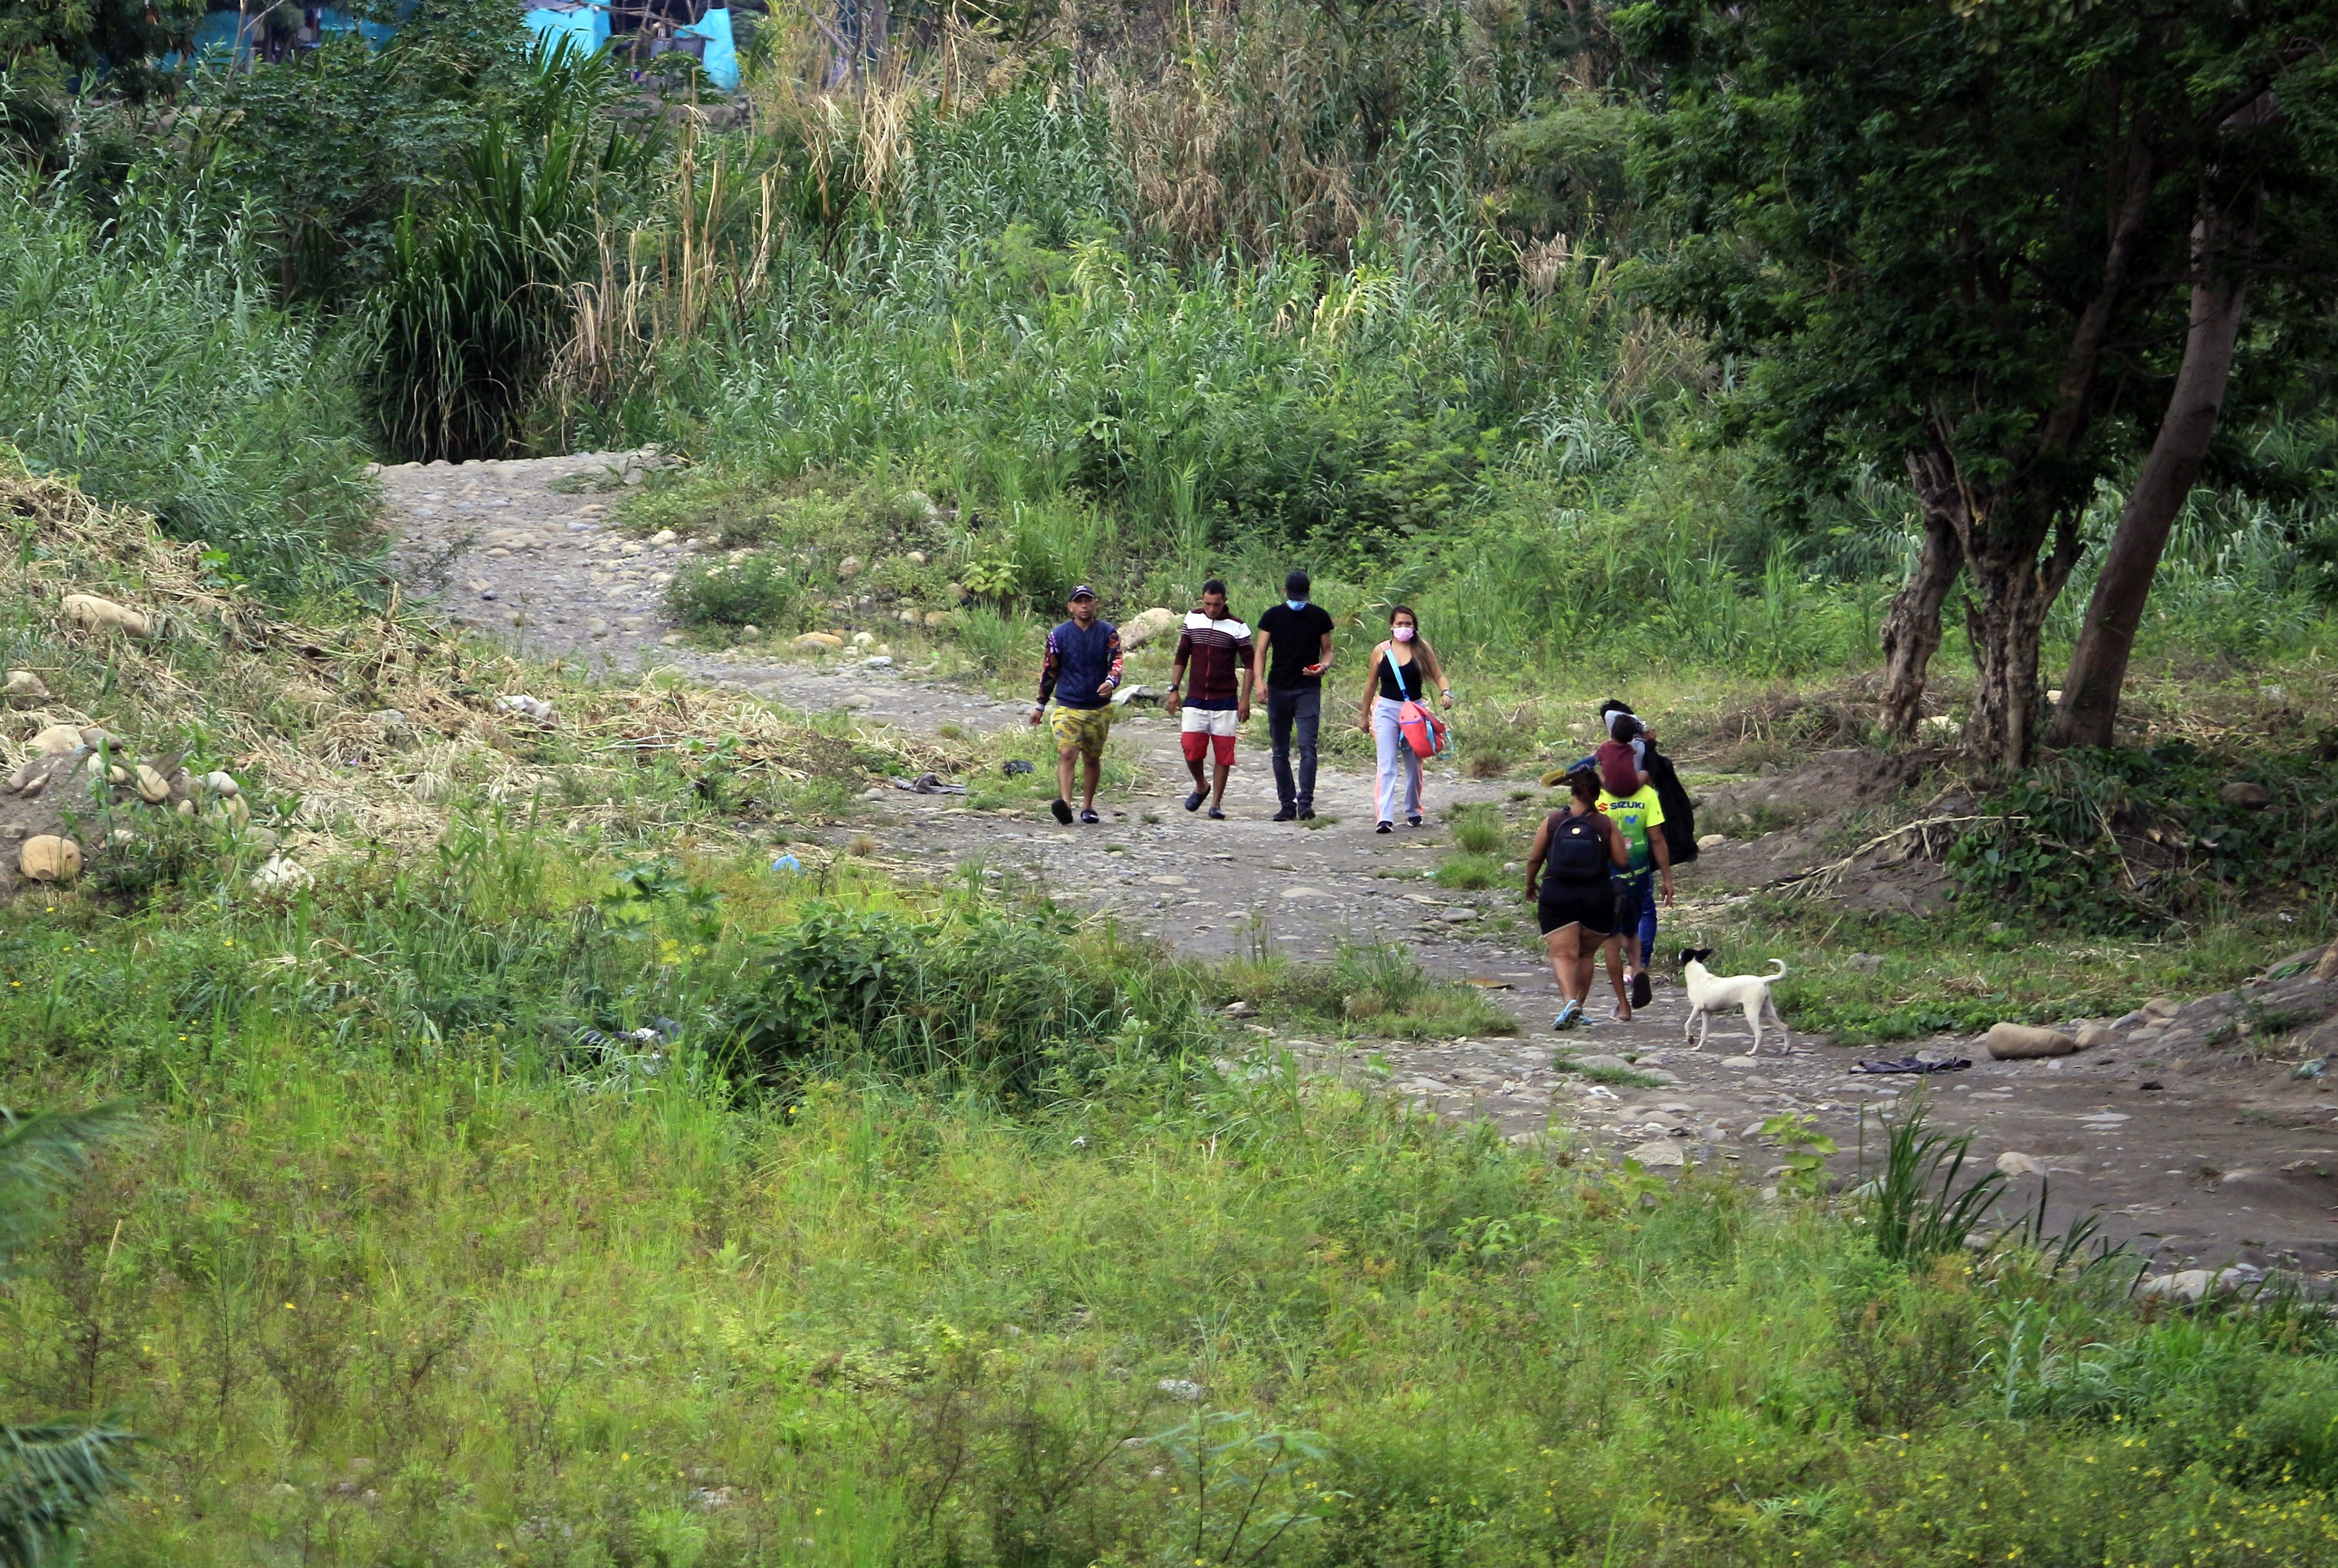 Los venezolanos se arriesgan a pasar a pie por caminos irregulares para escapar de las miserias del régimen 